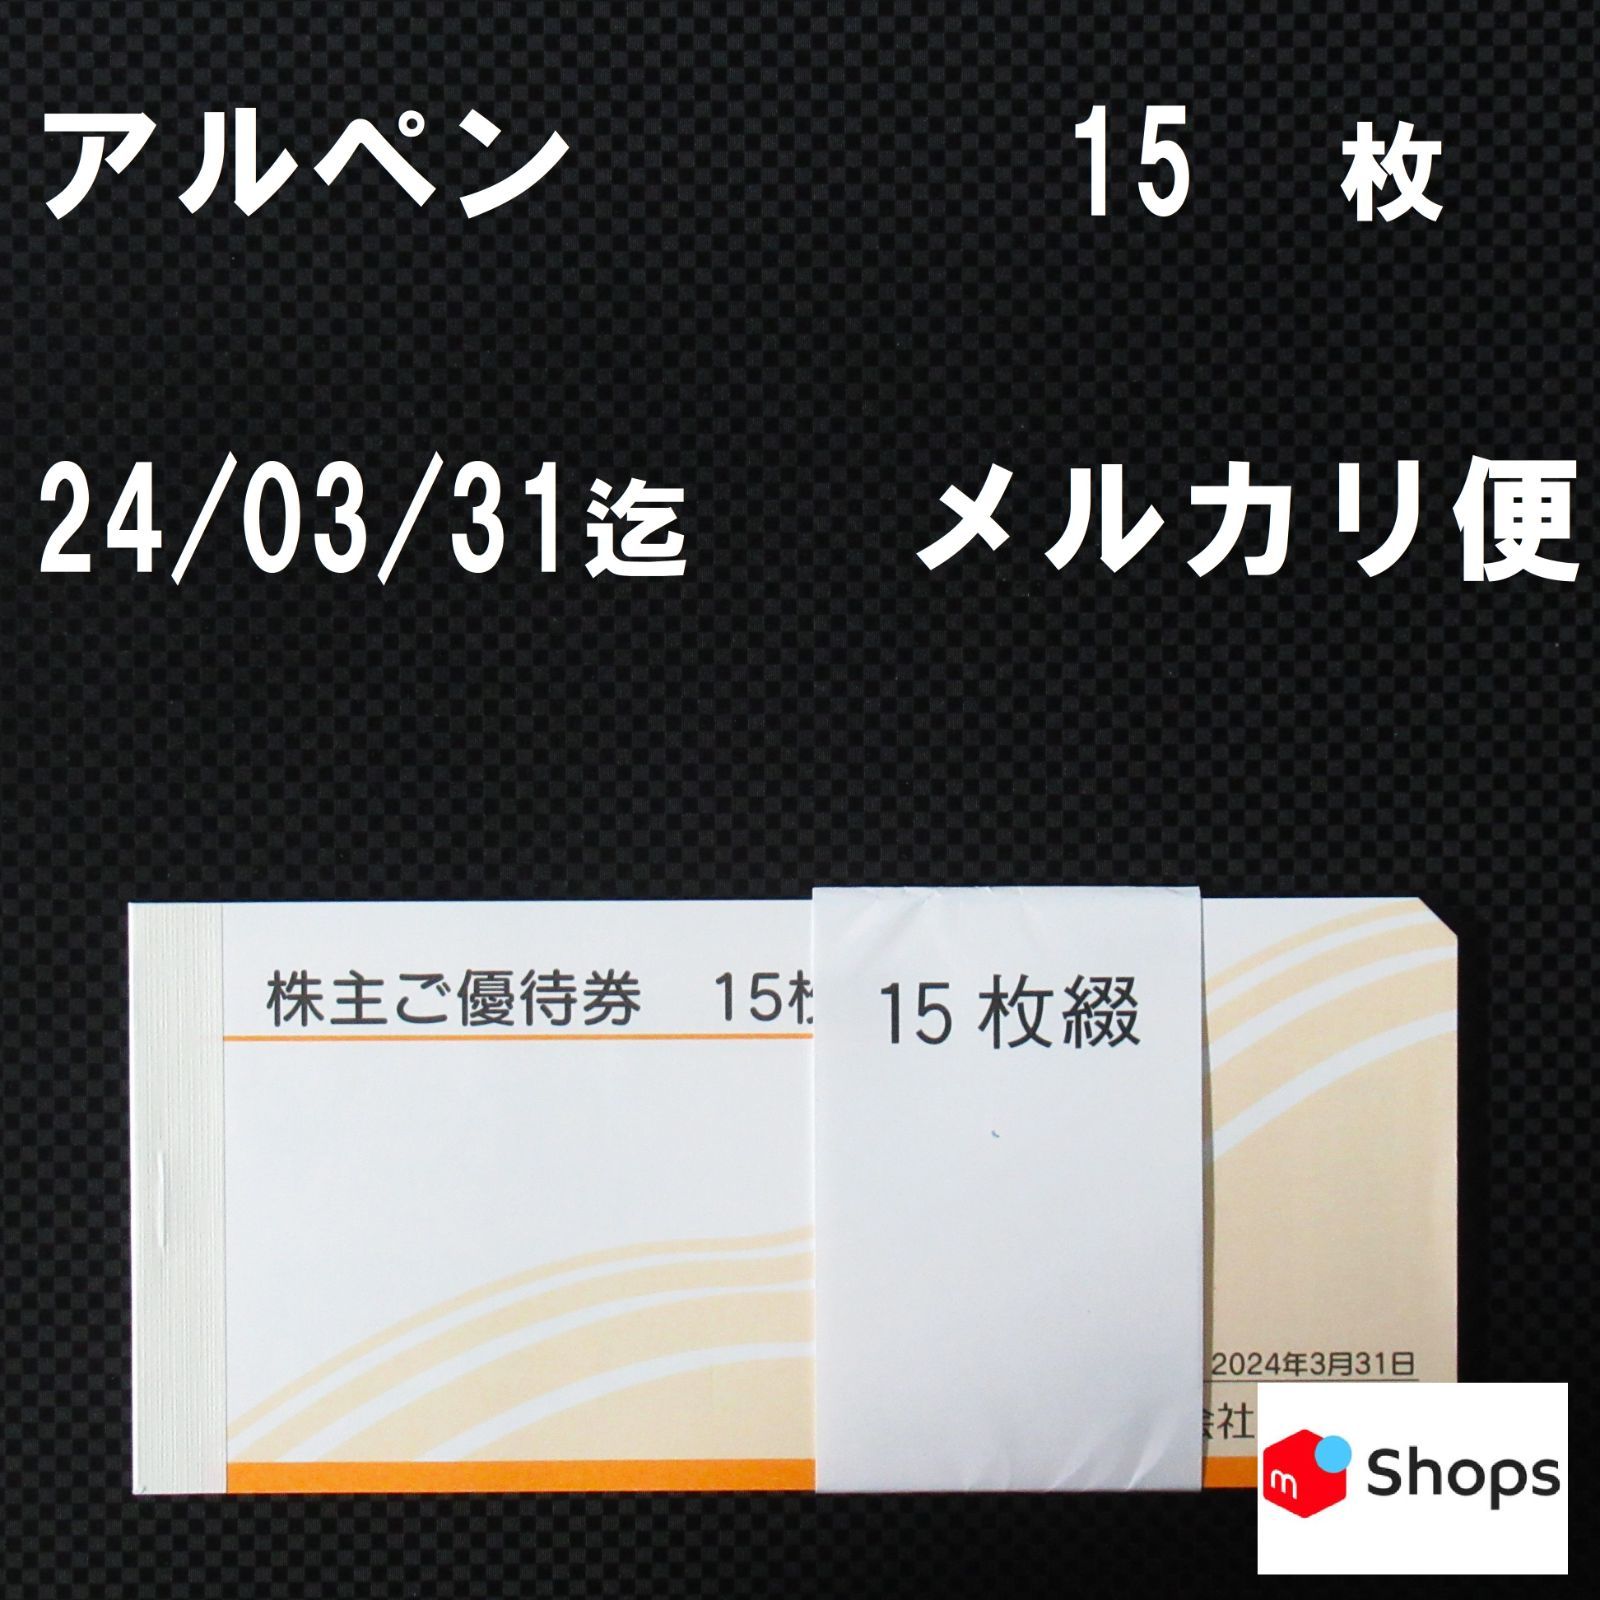 アルペン 株主優待 7500円分(2020年9月末期限)